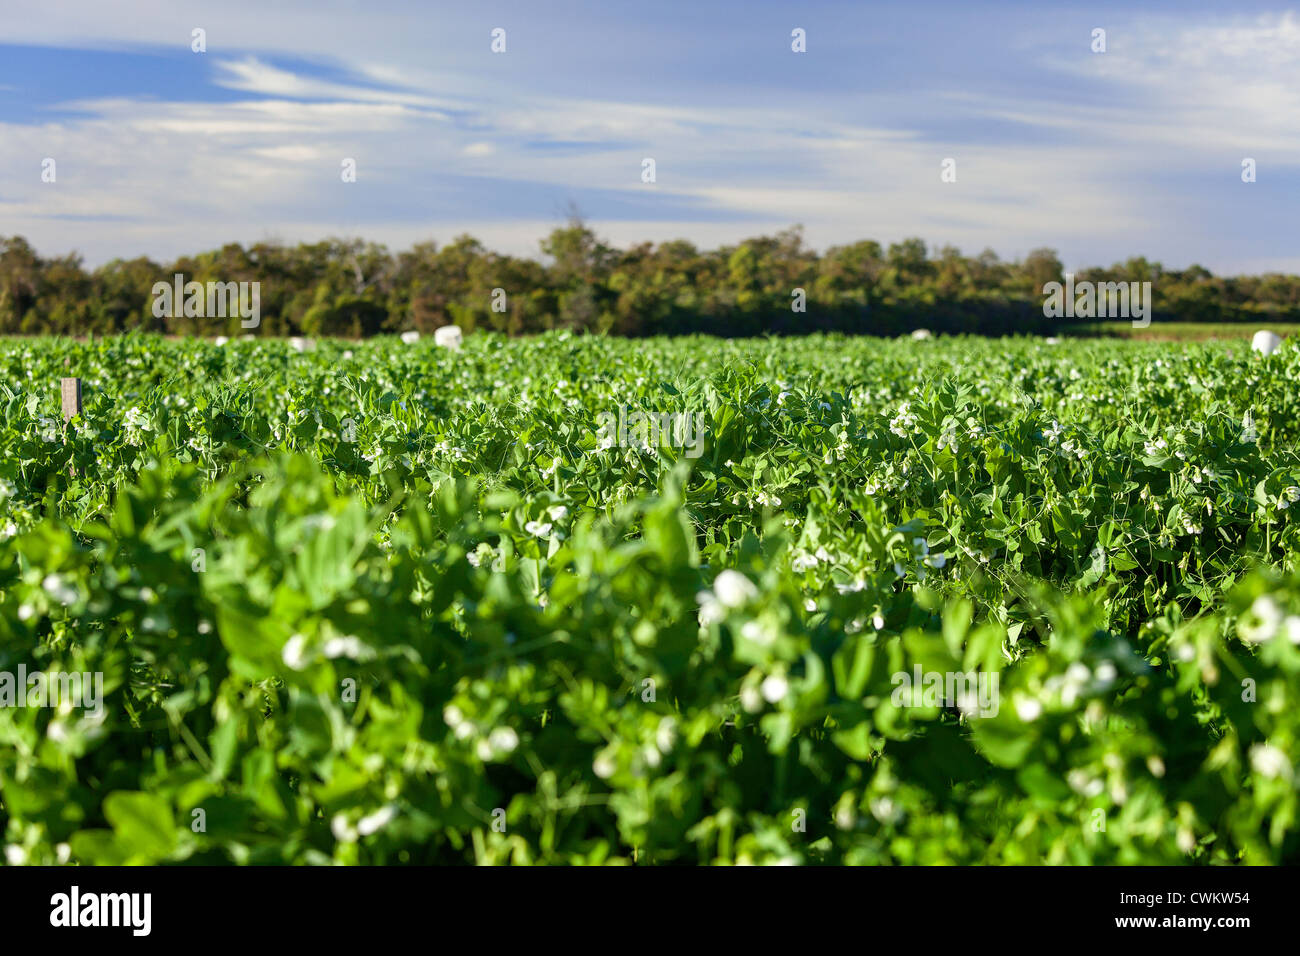 Zuckerschoten (Zuckerschoten) wachsen auf der Rebe auf einer kommerziellen Farm in Bundaberg Queensland Australien Stockfoto